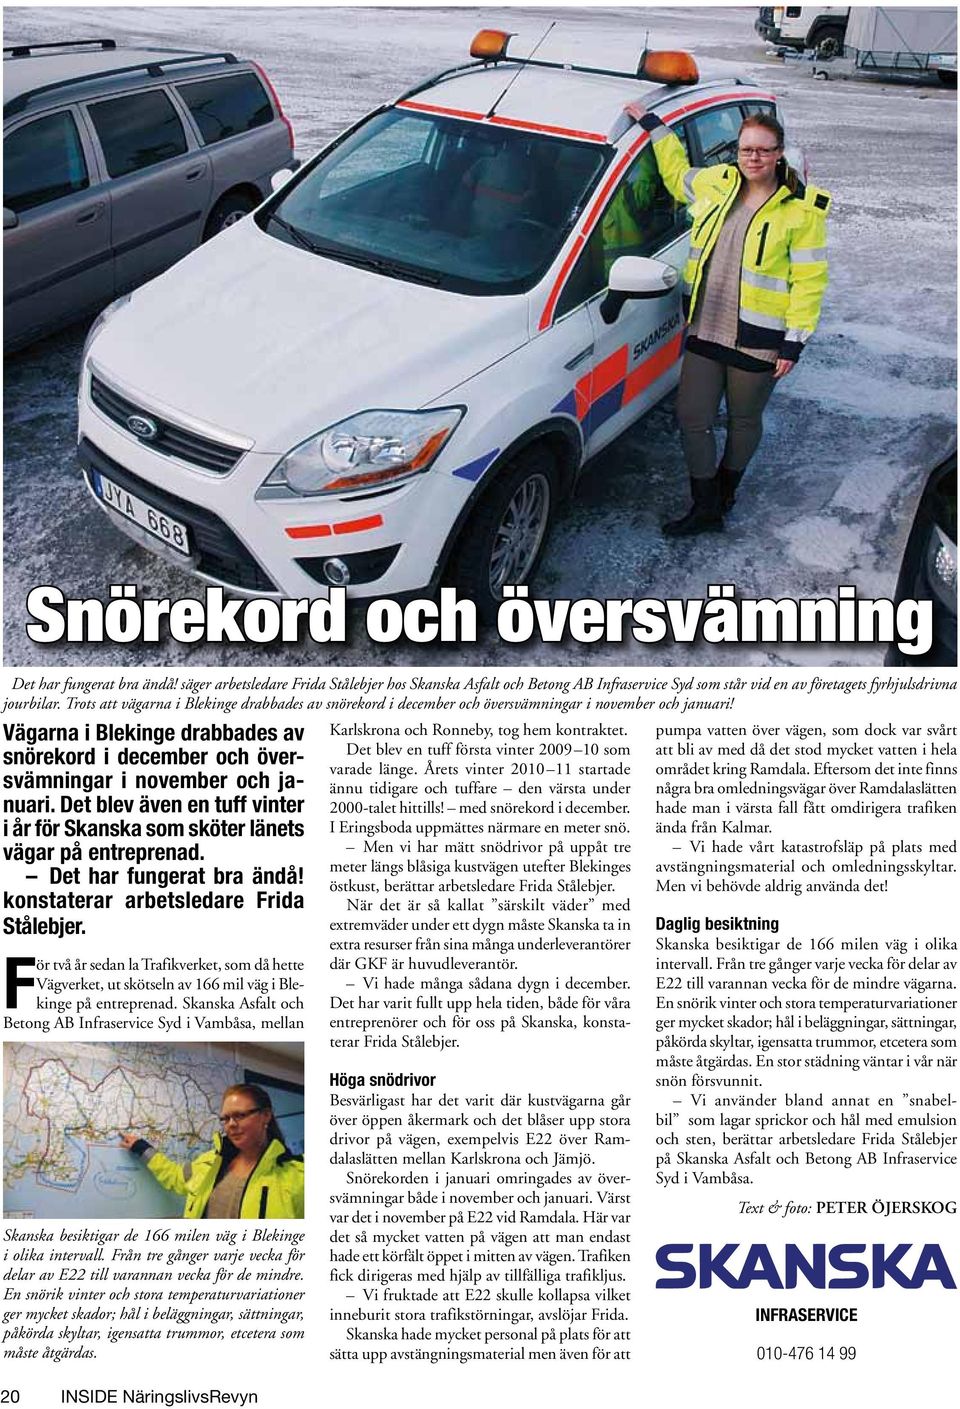 Vägarna i Blekinge drabbades av snörekord i december och översvämningar i november och januari. Det blev även en tuff vinter i år för Skanska som sköter länets vägar på entreprenad.